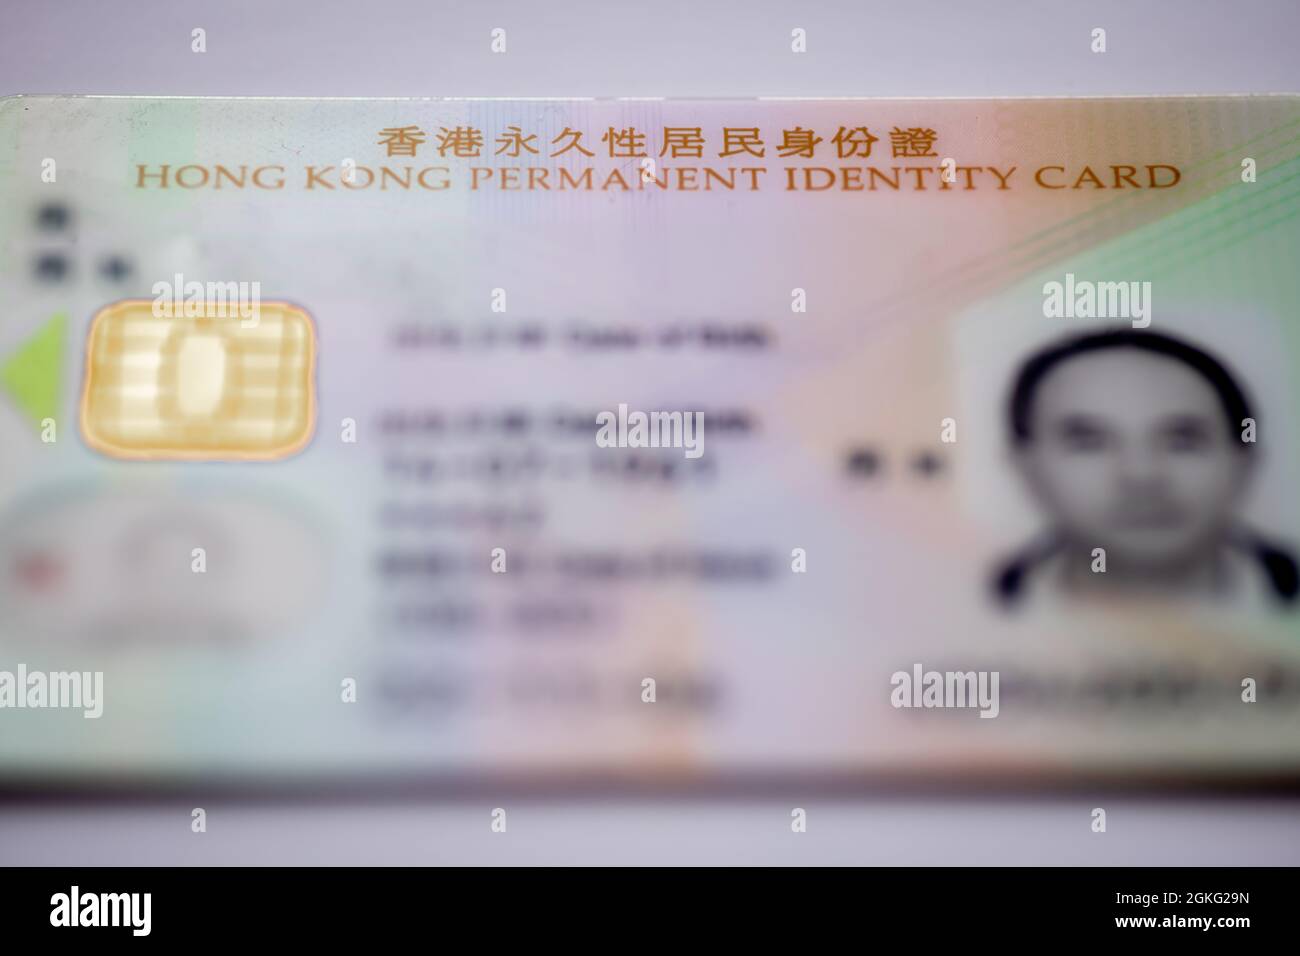 Documento de identidad permanente de la RAE de Hong Kong, China. Foto de stock